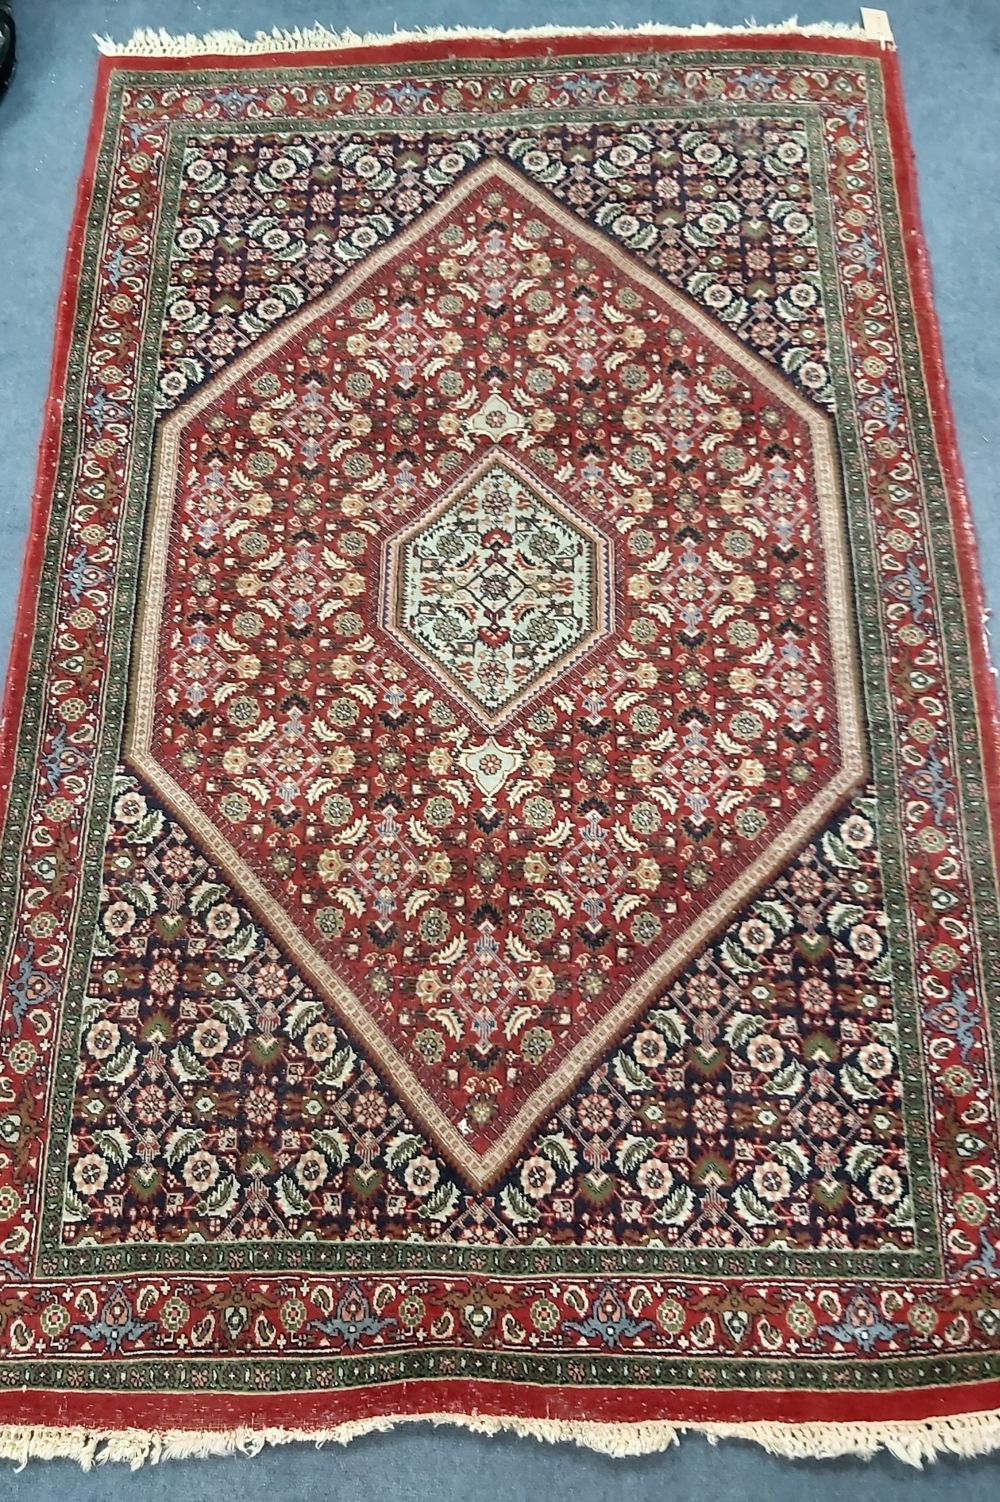 A Kashan rug, 166 x 109cm